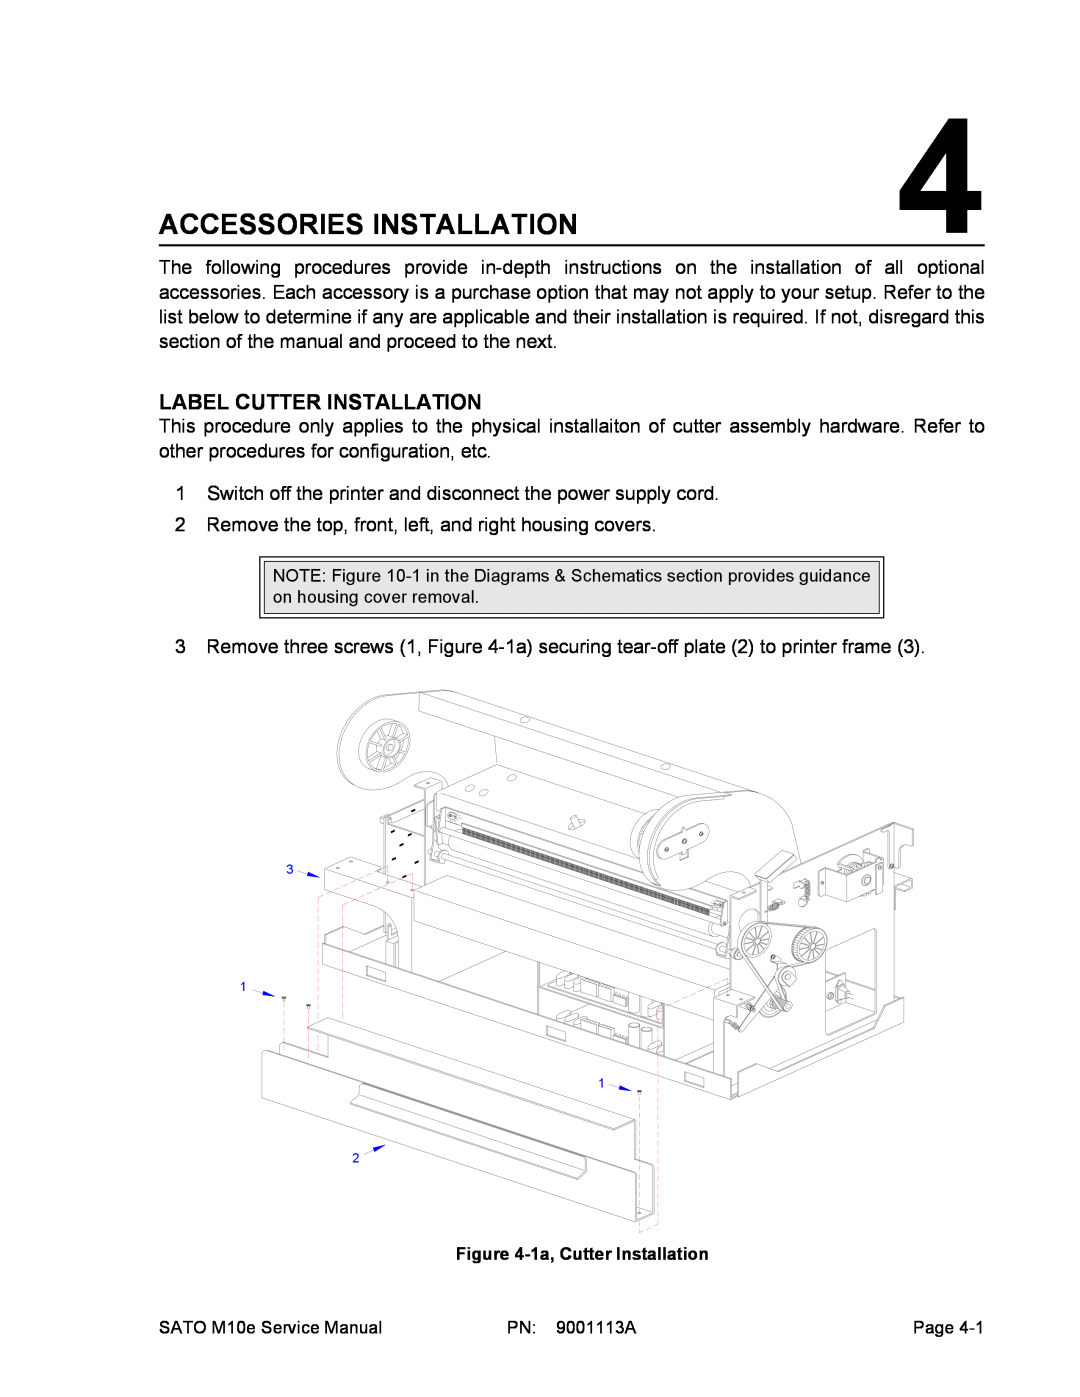 SATO 10e service manual Accessories Installation, Label Cutter Installation 